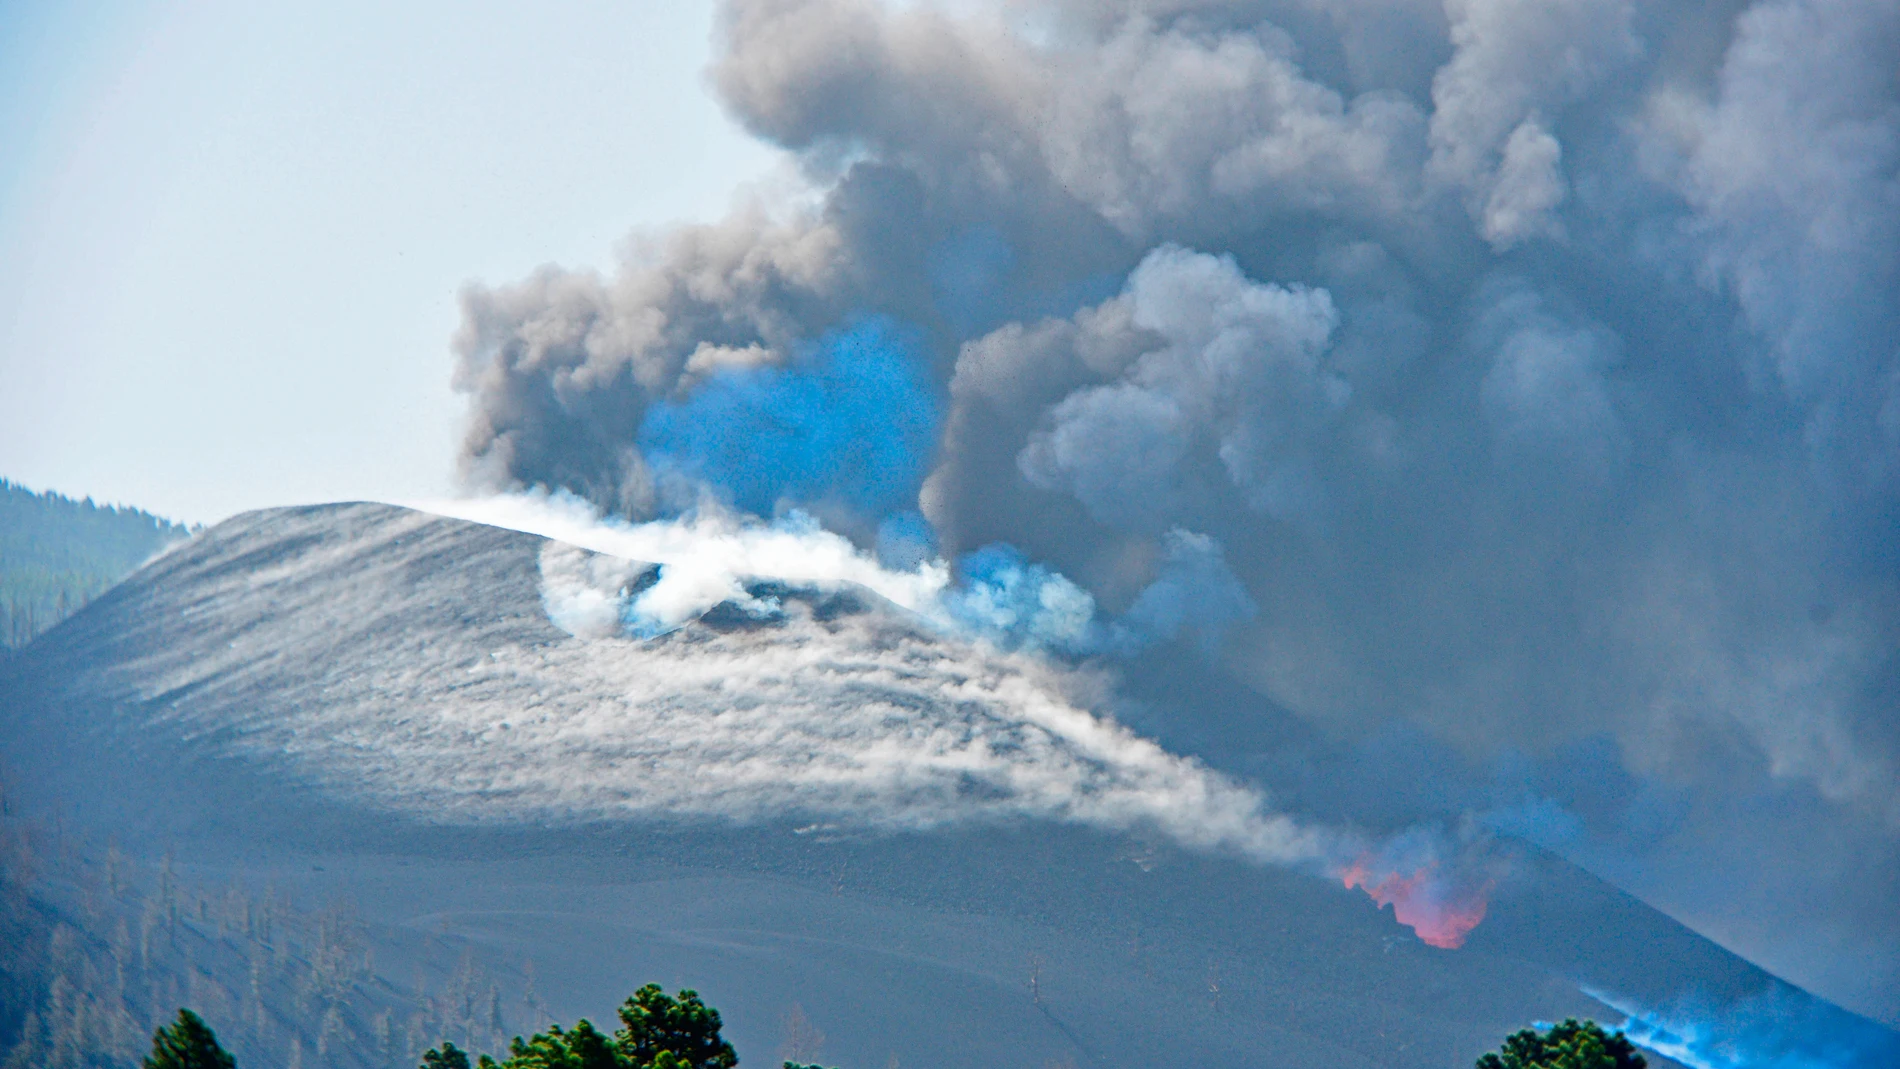 Así es vivir el volcán de La Palma desde la ventana de casa, los terremotos y el rugir de la erupción de Cumbre Vieja son constantes para los vecinos que viven cerca.